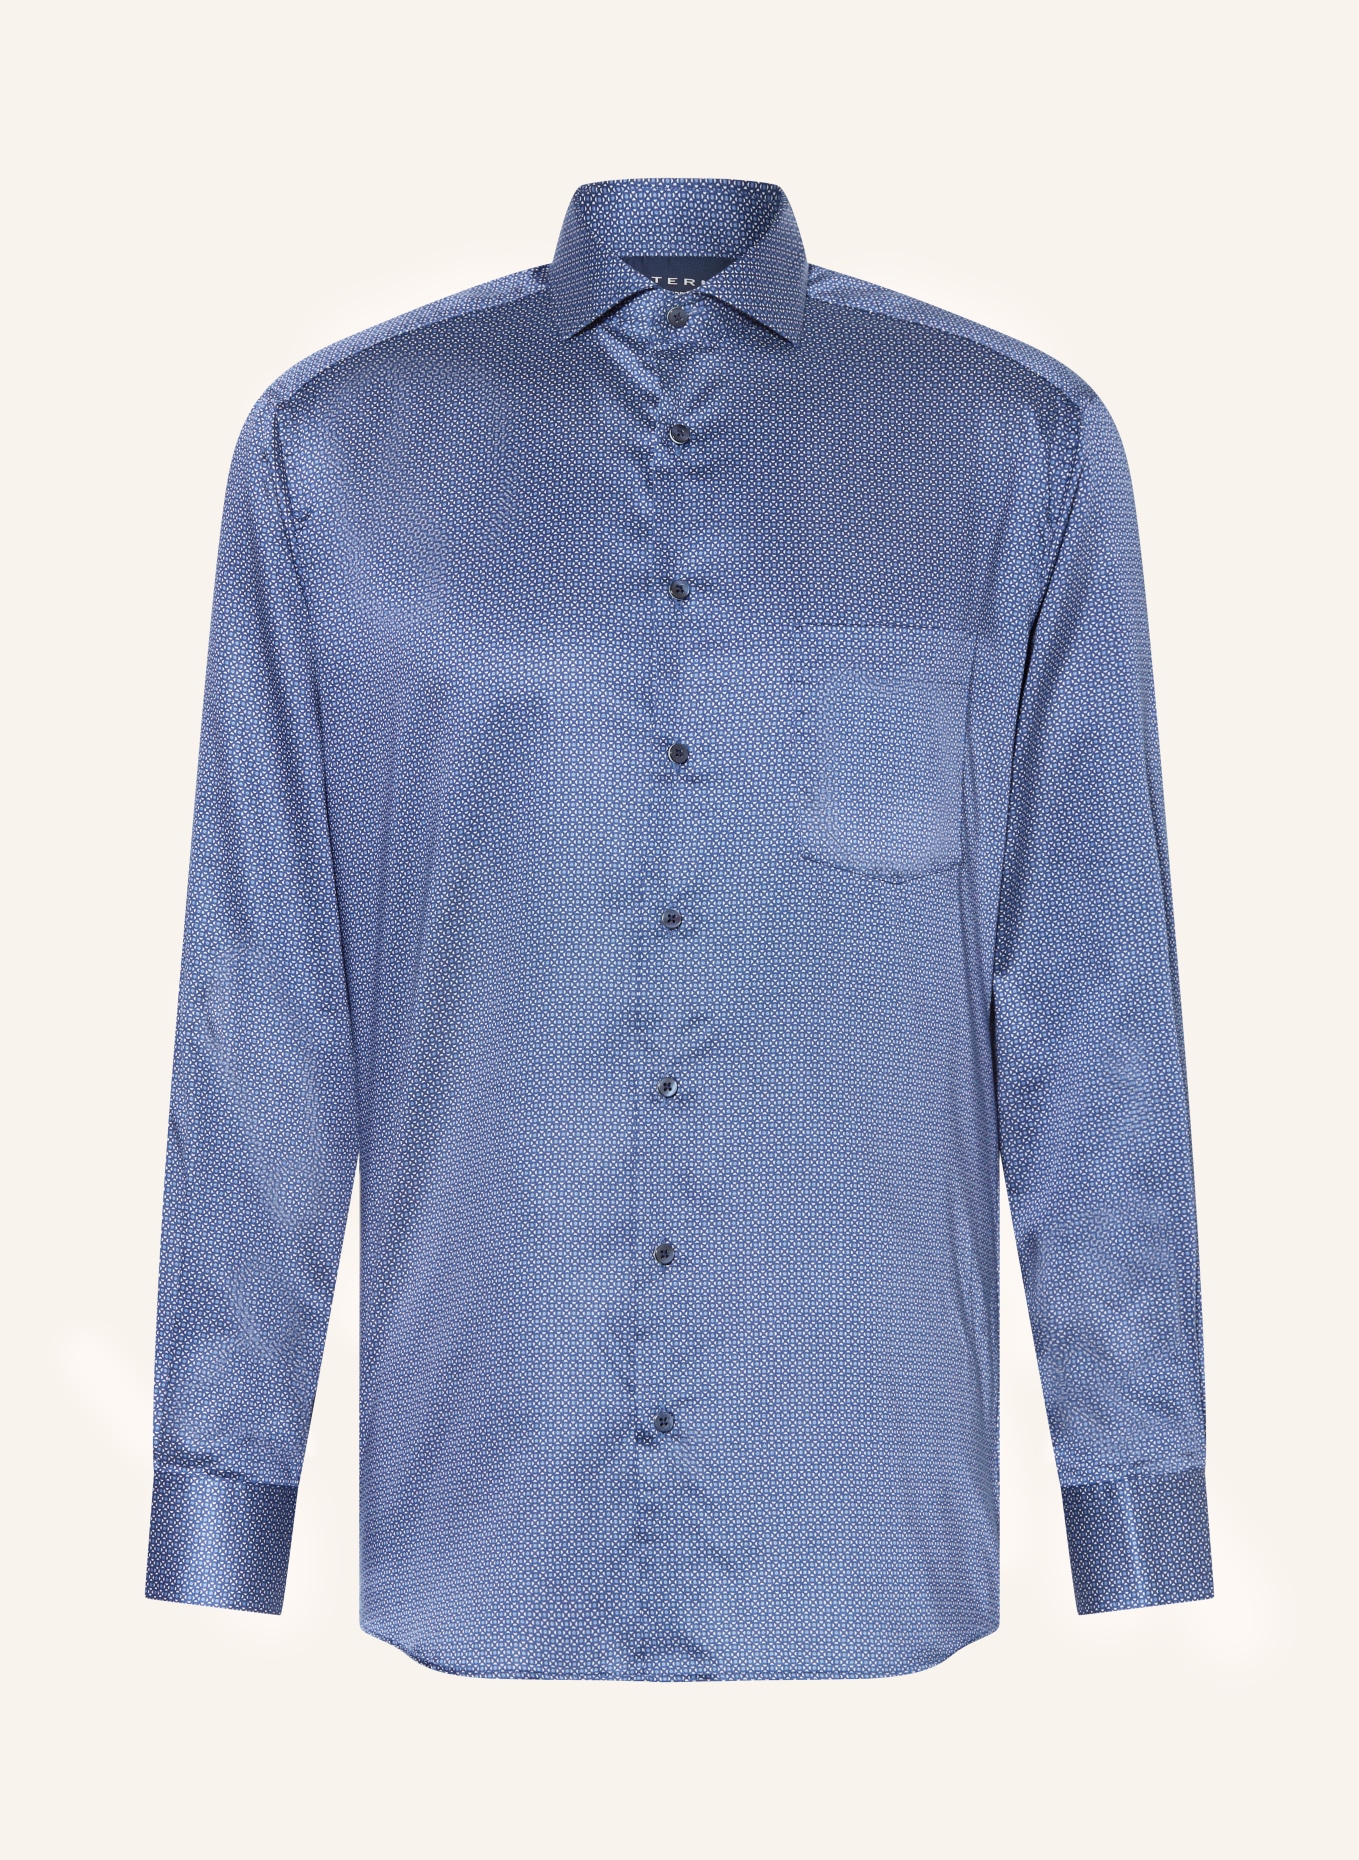 ETERNA Shirt modern fit blue/ dark blue/ in white